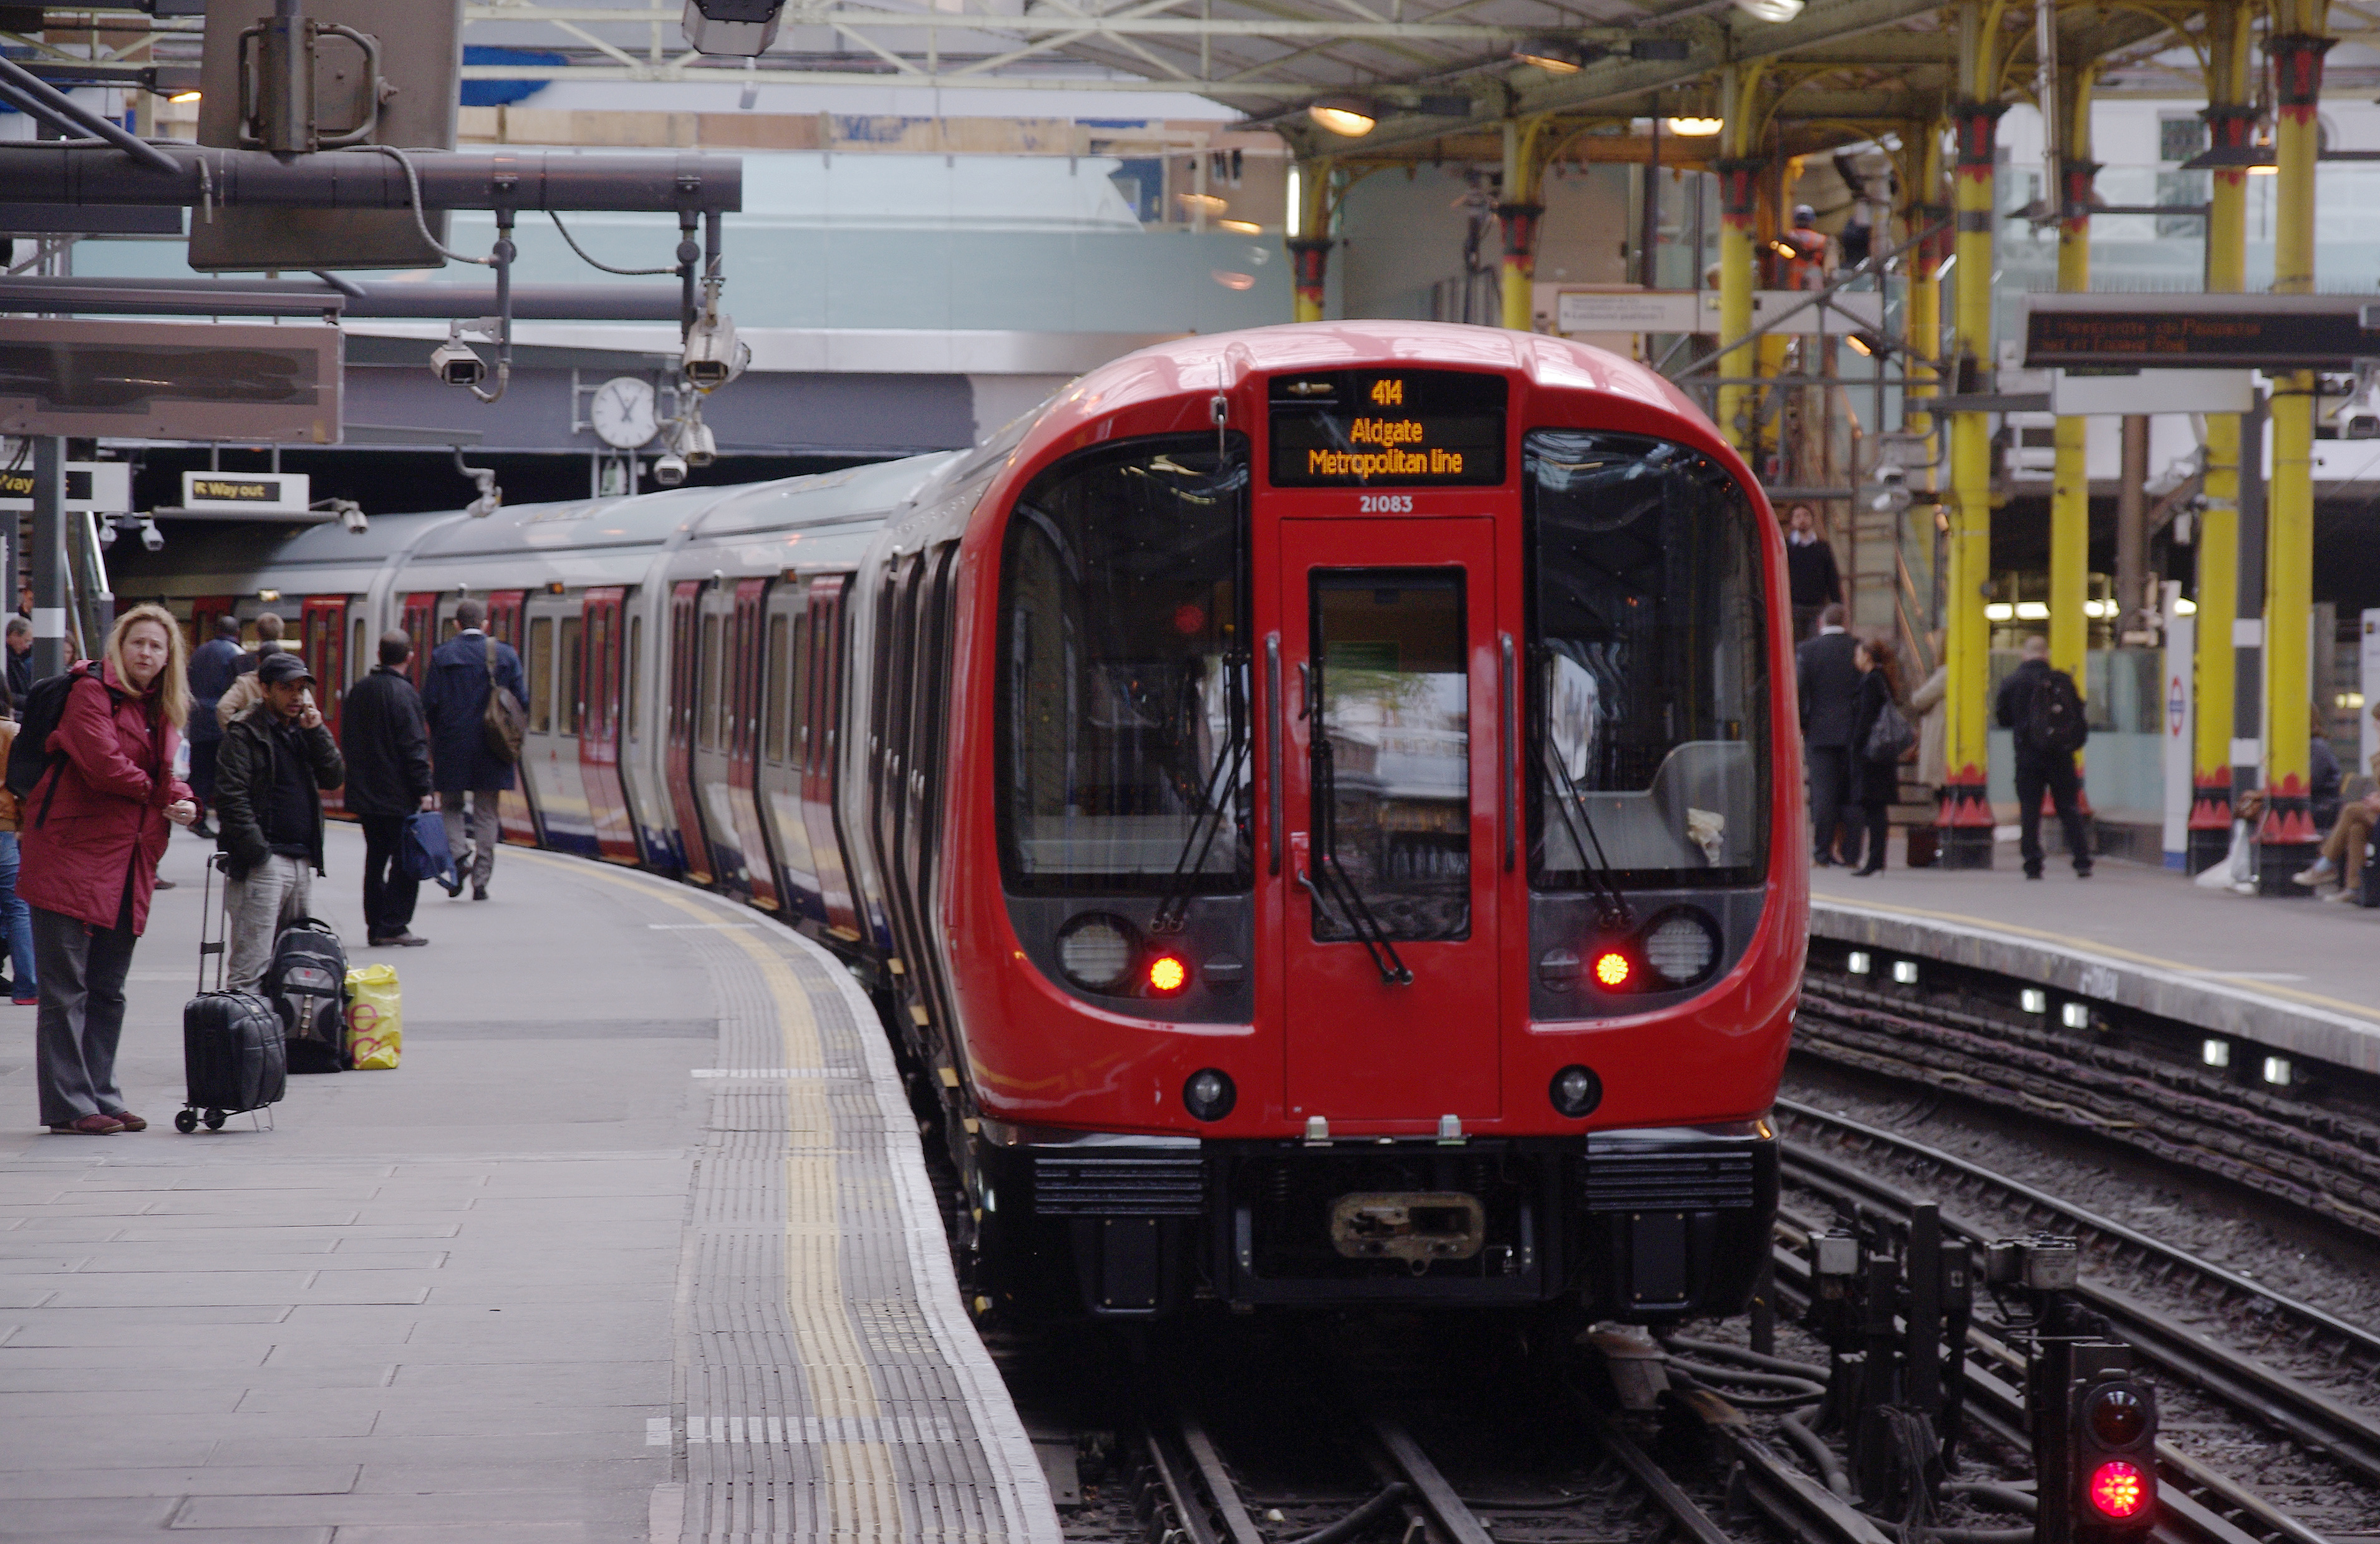 Huszonnégy órás metrósztrájk kezdődik Londonban szerdán